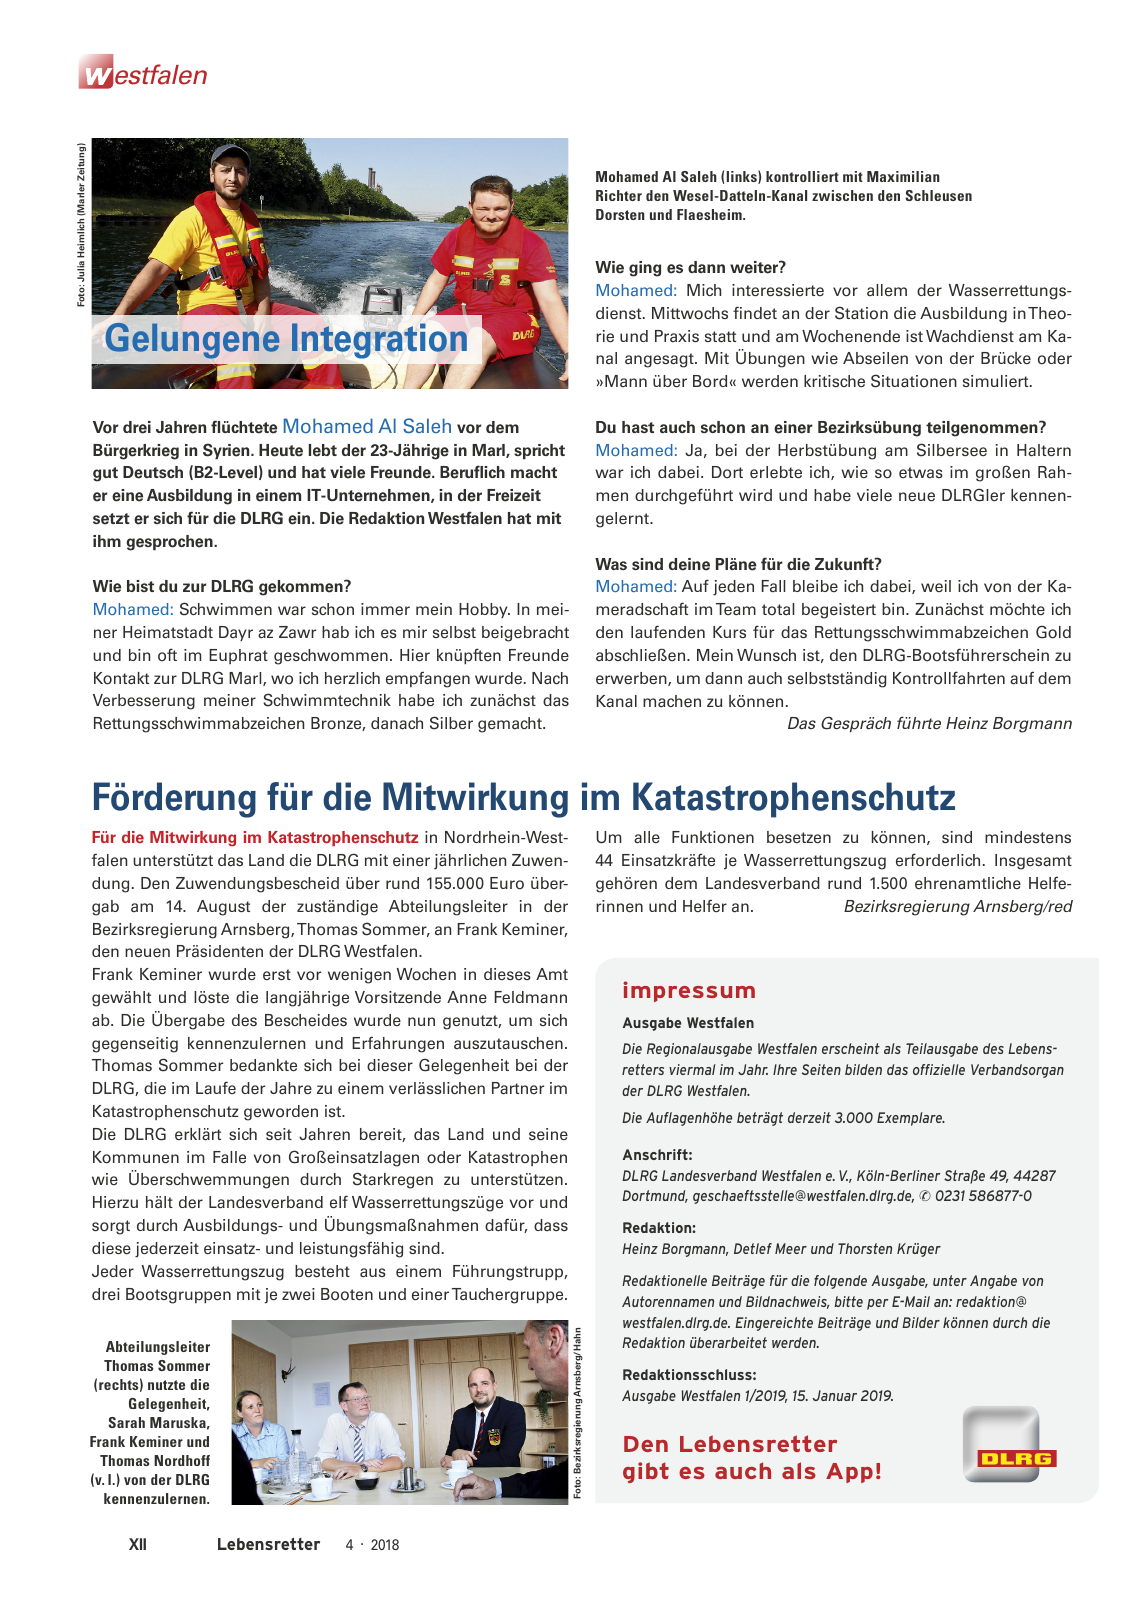 Vorschau Lebensretter 4/2018 - Regionalausgabe Westfalen Seite 14